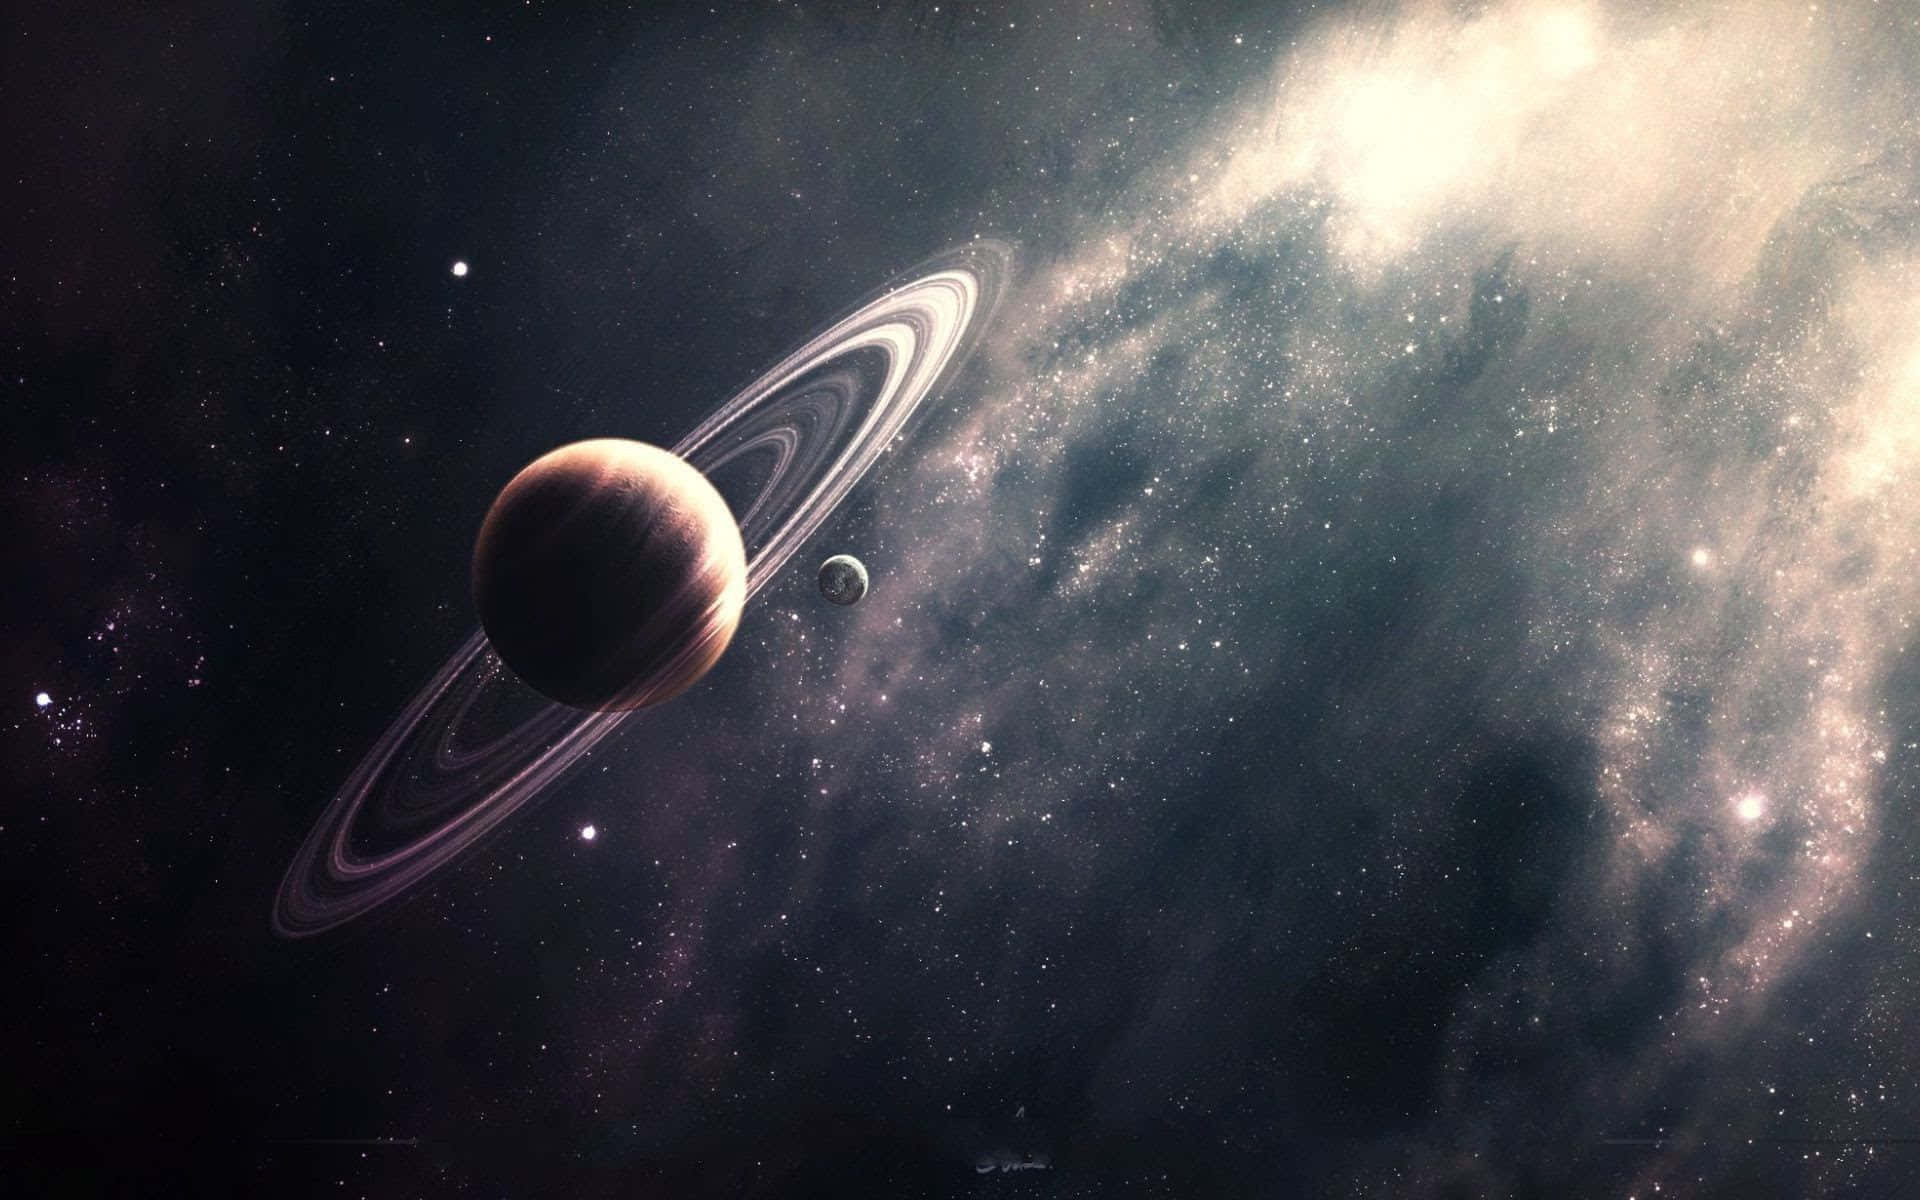 Saturnomajestuoso En La Inmensidad Del Espacio.